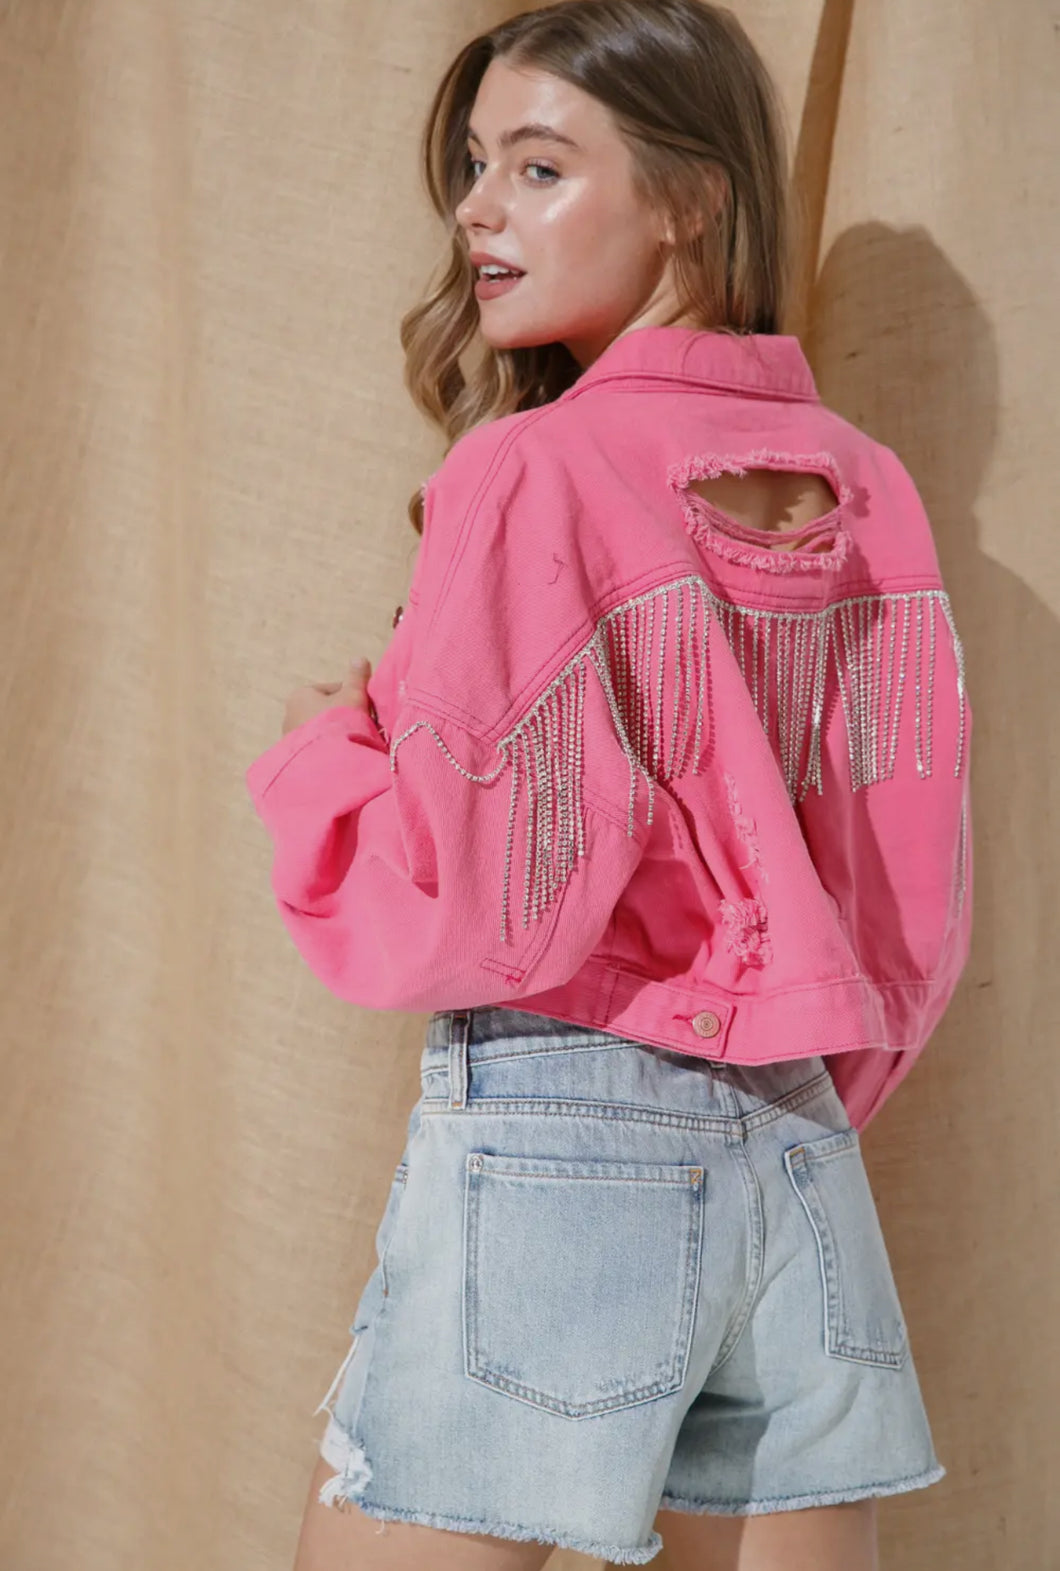 Hot pink rhinestone jacket